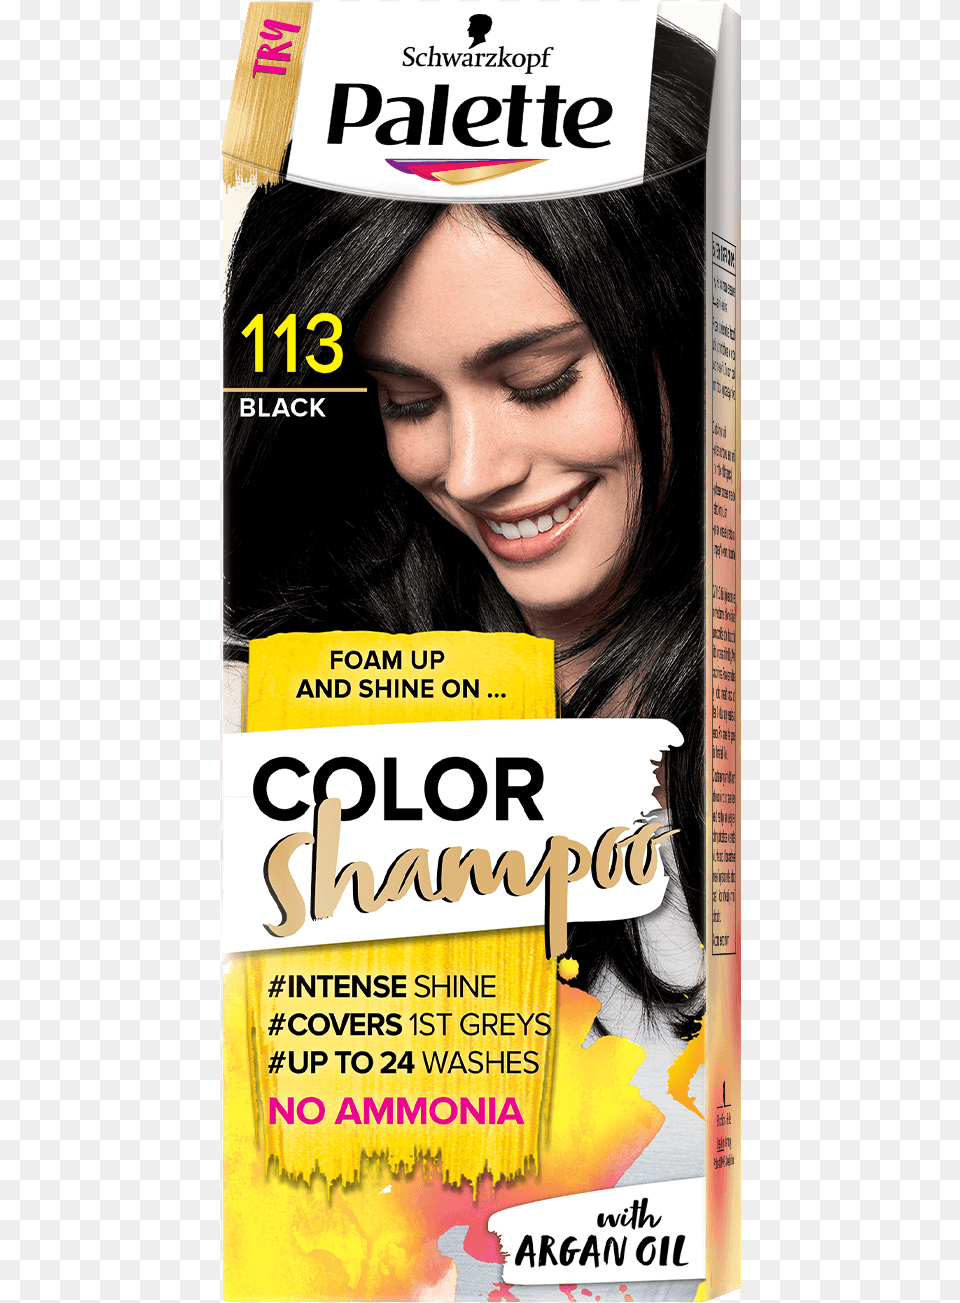 Palette Com Cs Baseline 113 Black Palette Color Shampoo, Publication, Book, Adult, Person Png Image